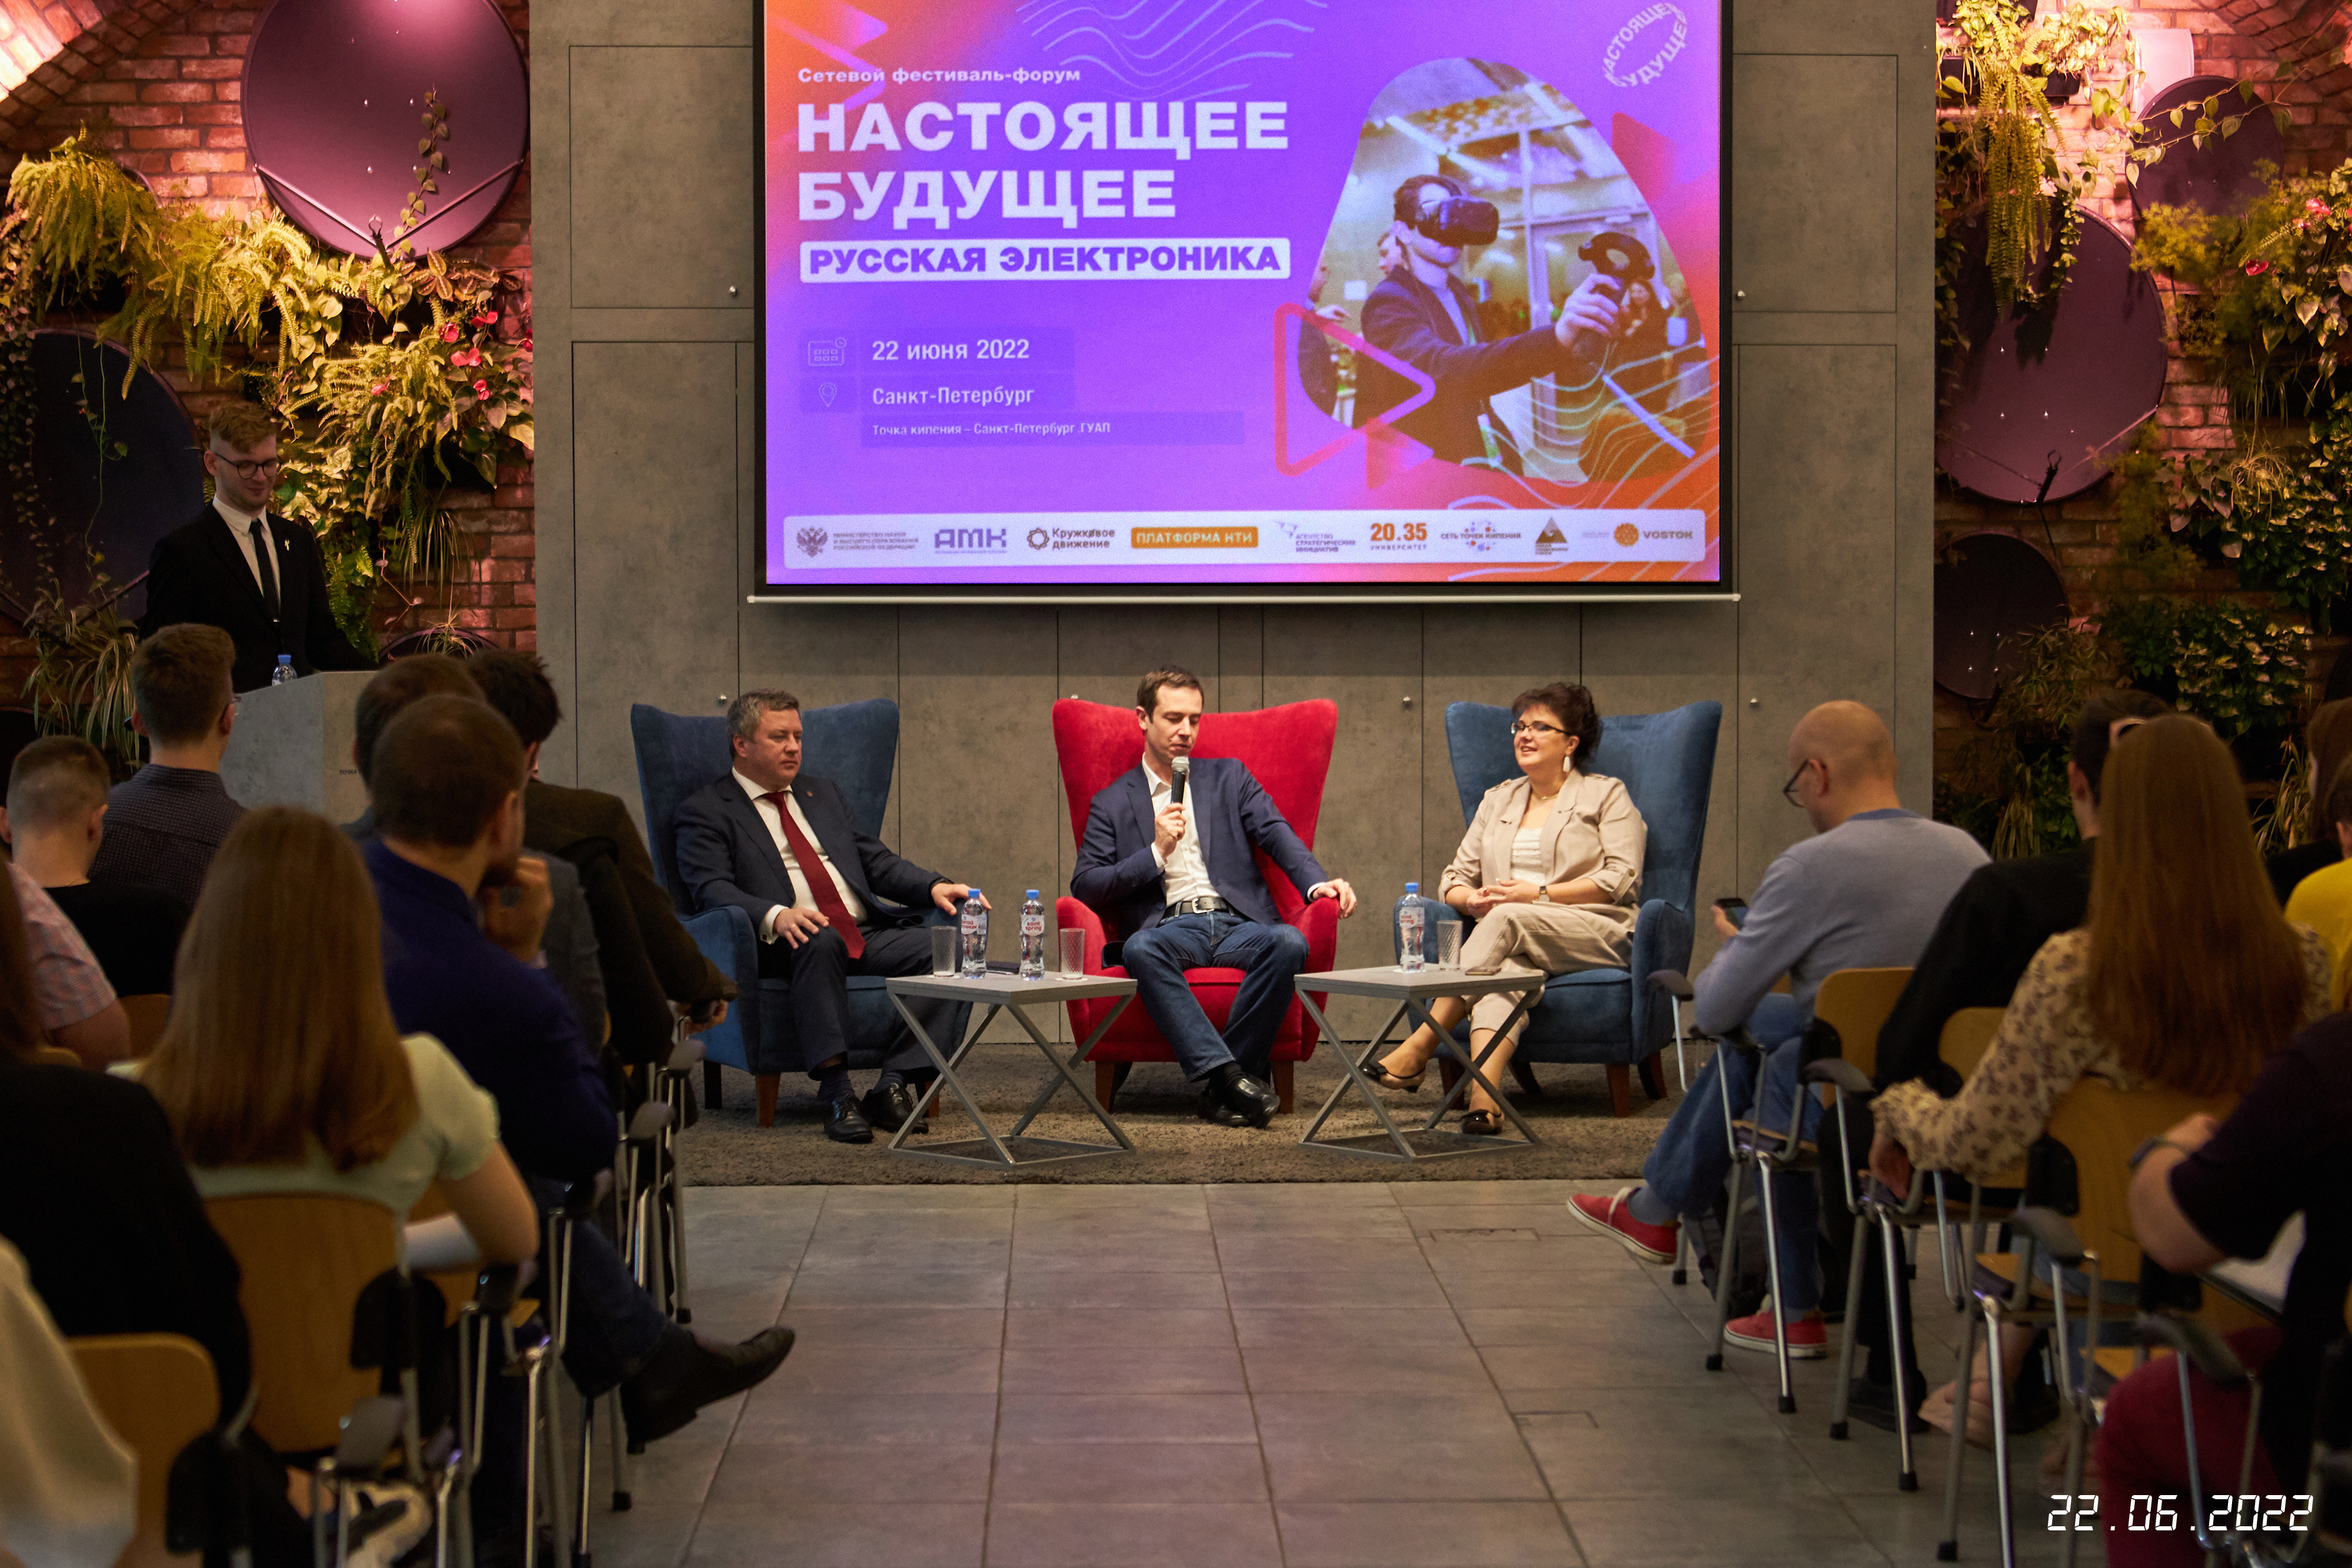 Форум «Настоящее будущее: русская электроника» запустил пересборку технологического сообщества